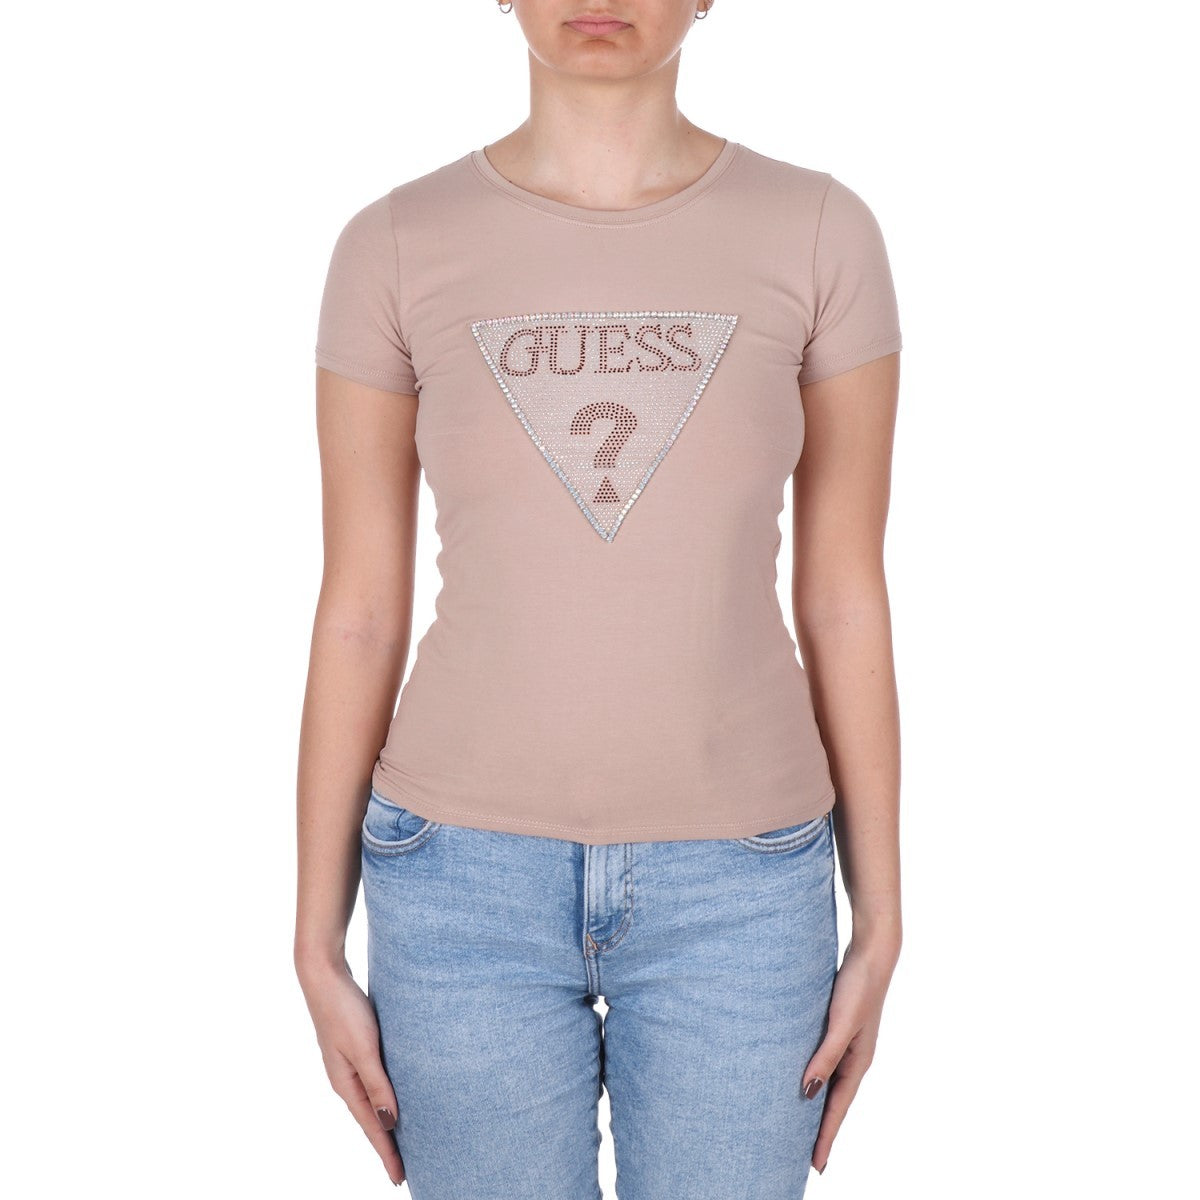 T-Shirt Guess W3RI05KA0Q1